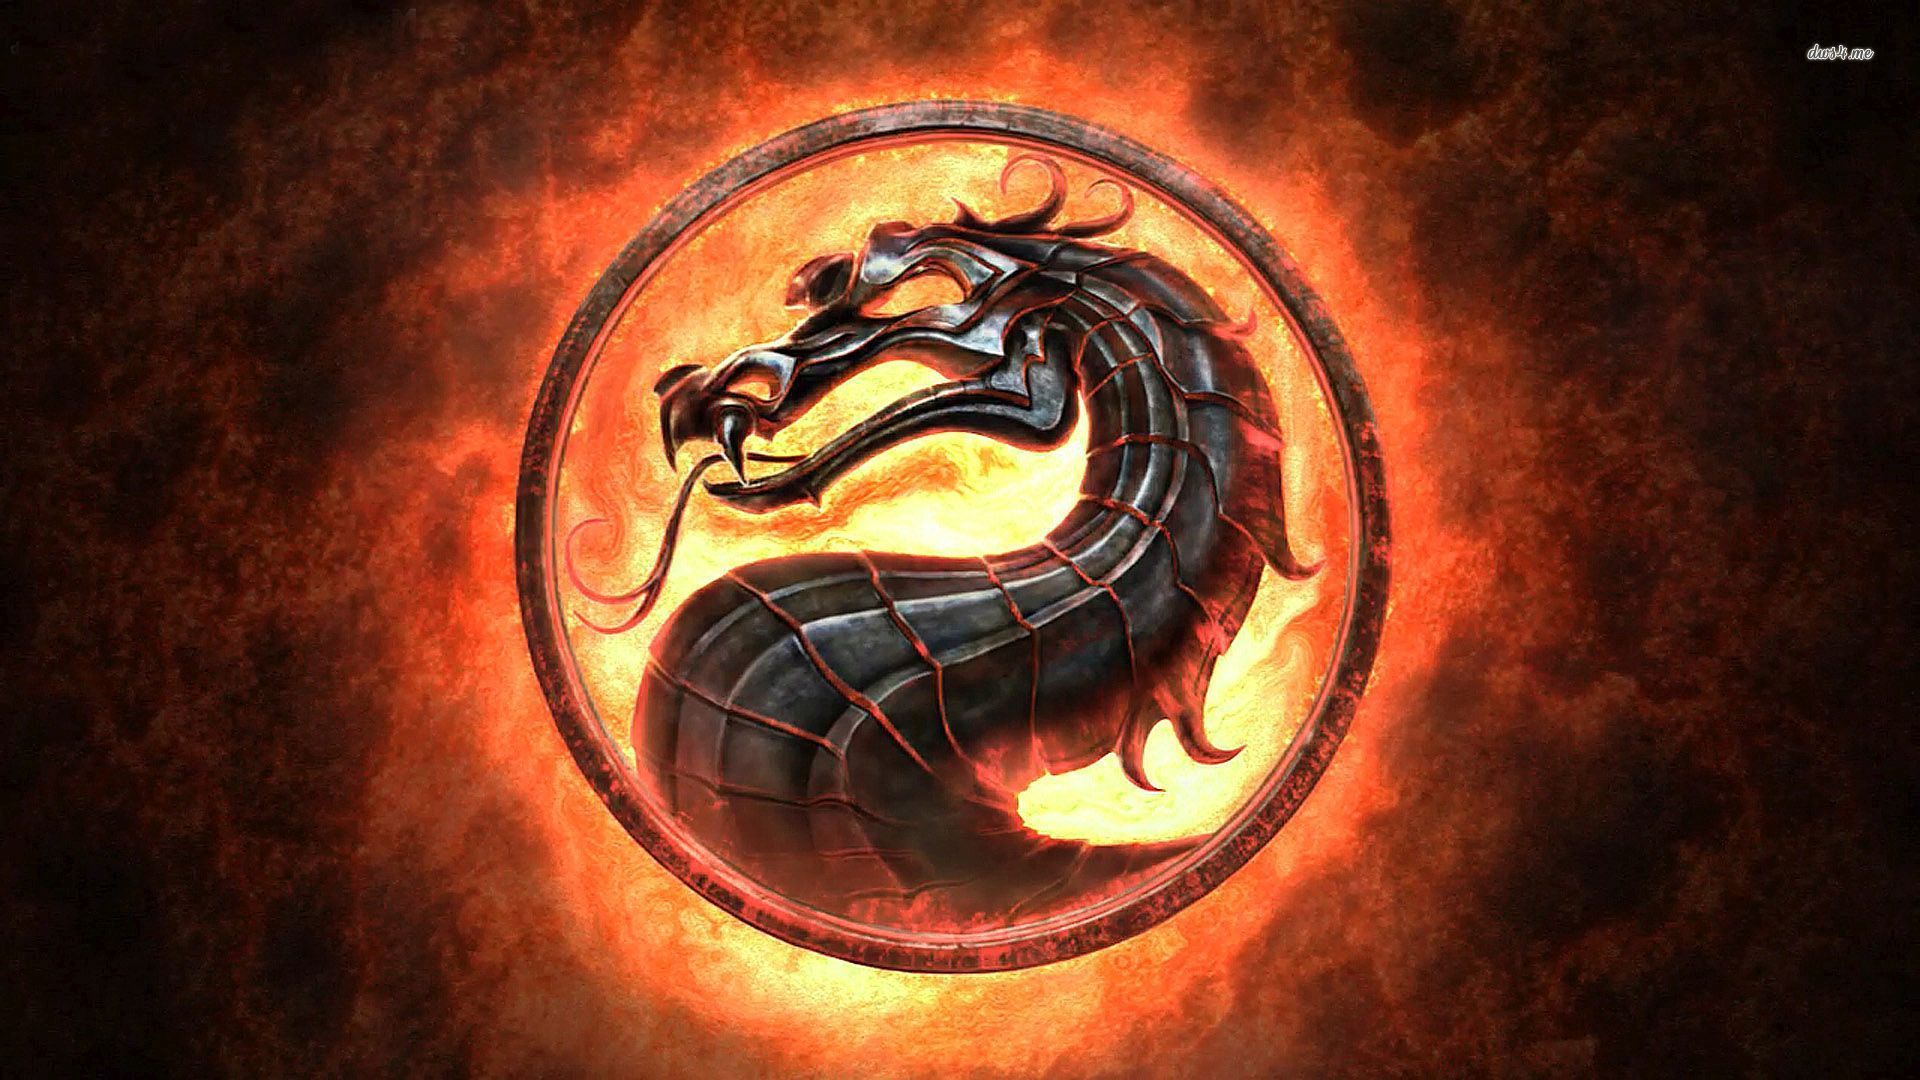 Mortal Kombat Dragon Logo wallpaper 1920x1080 1920x1080